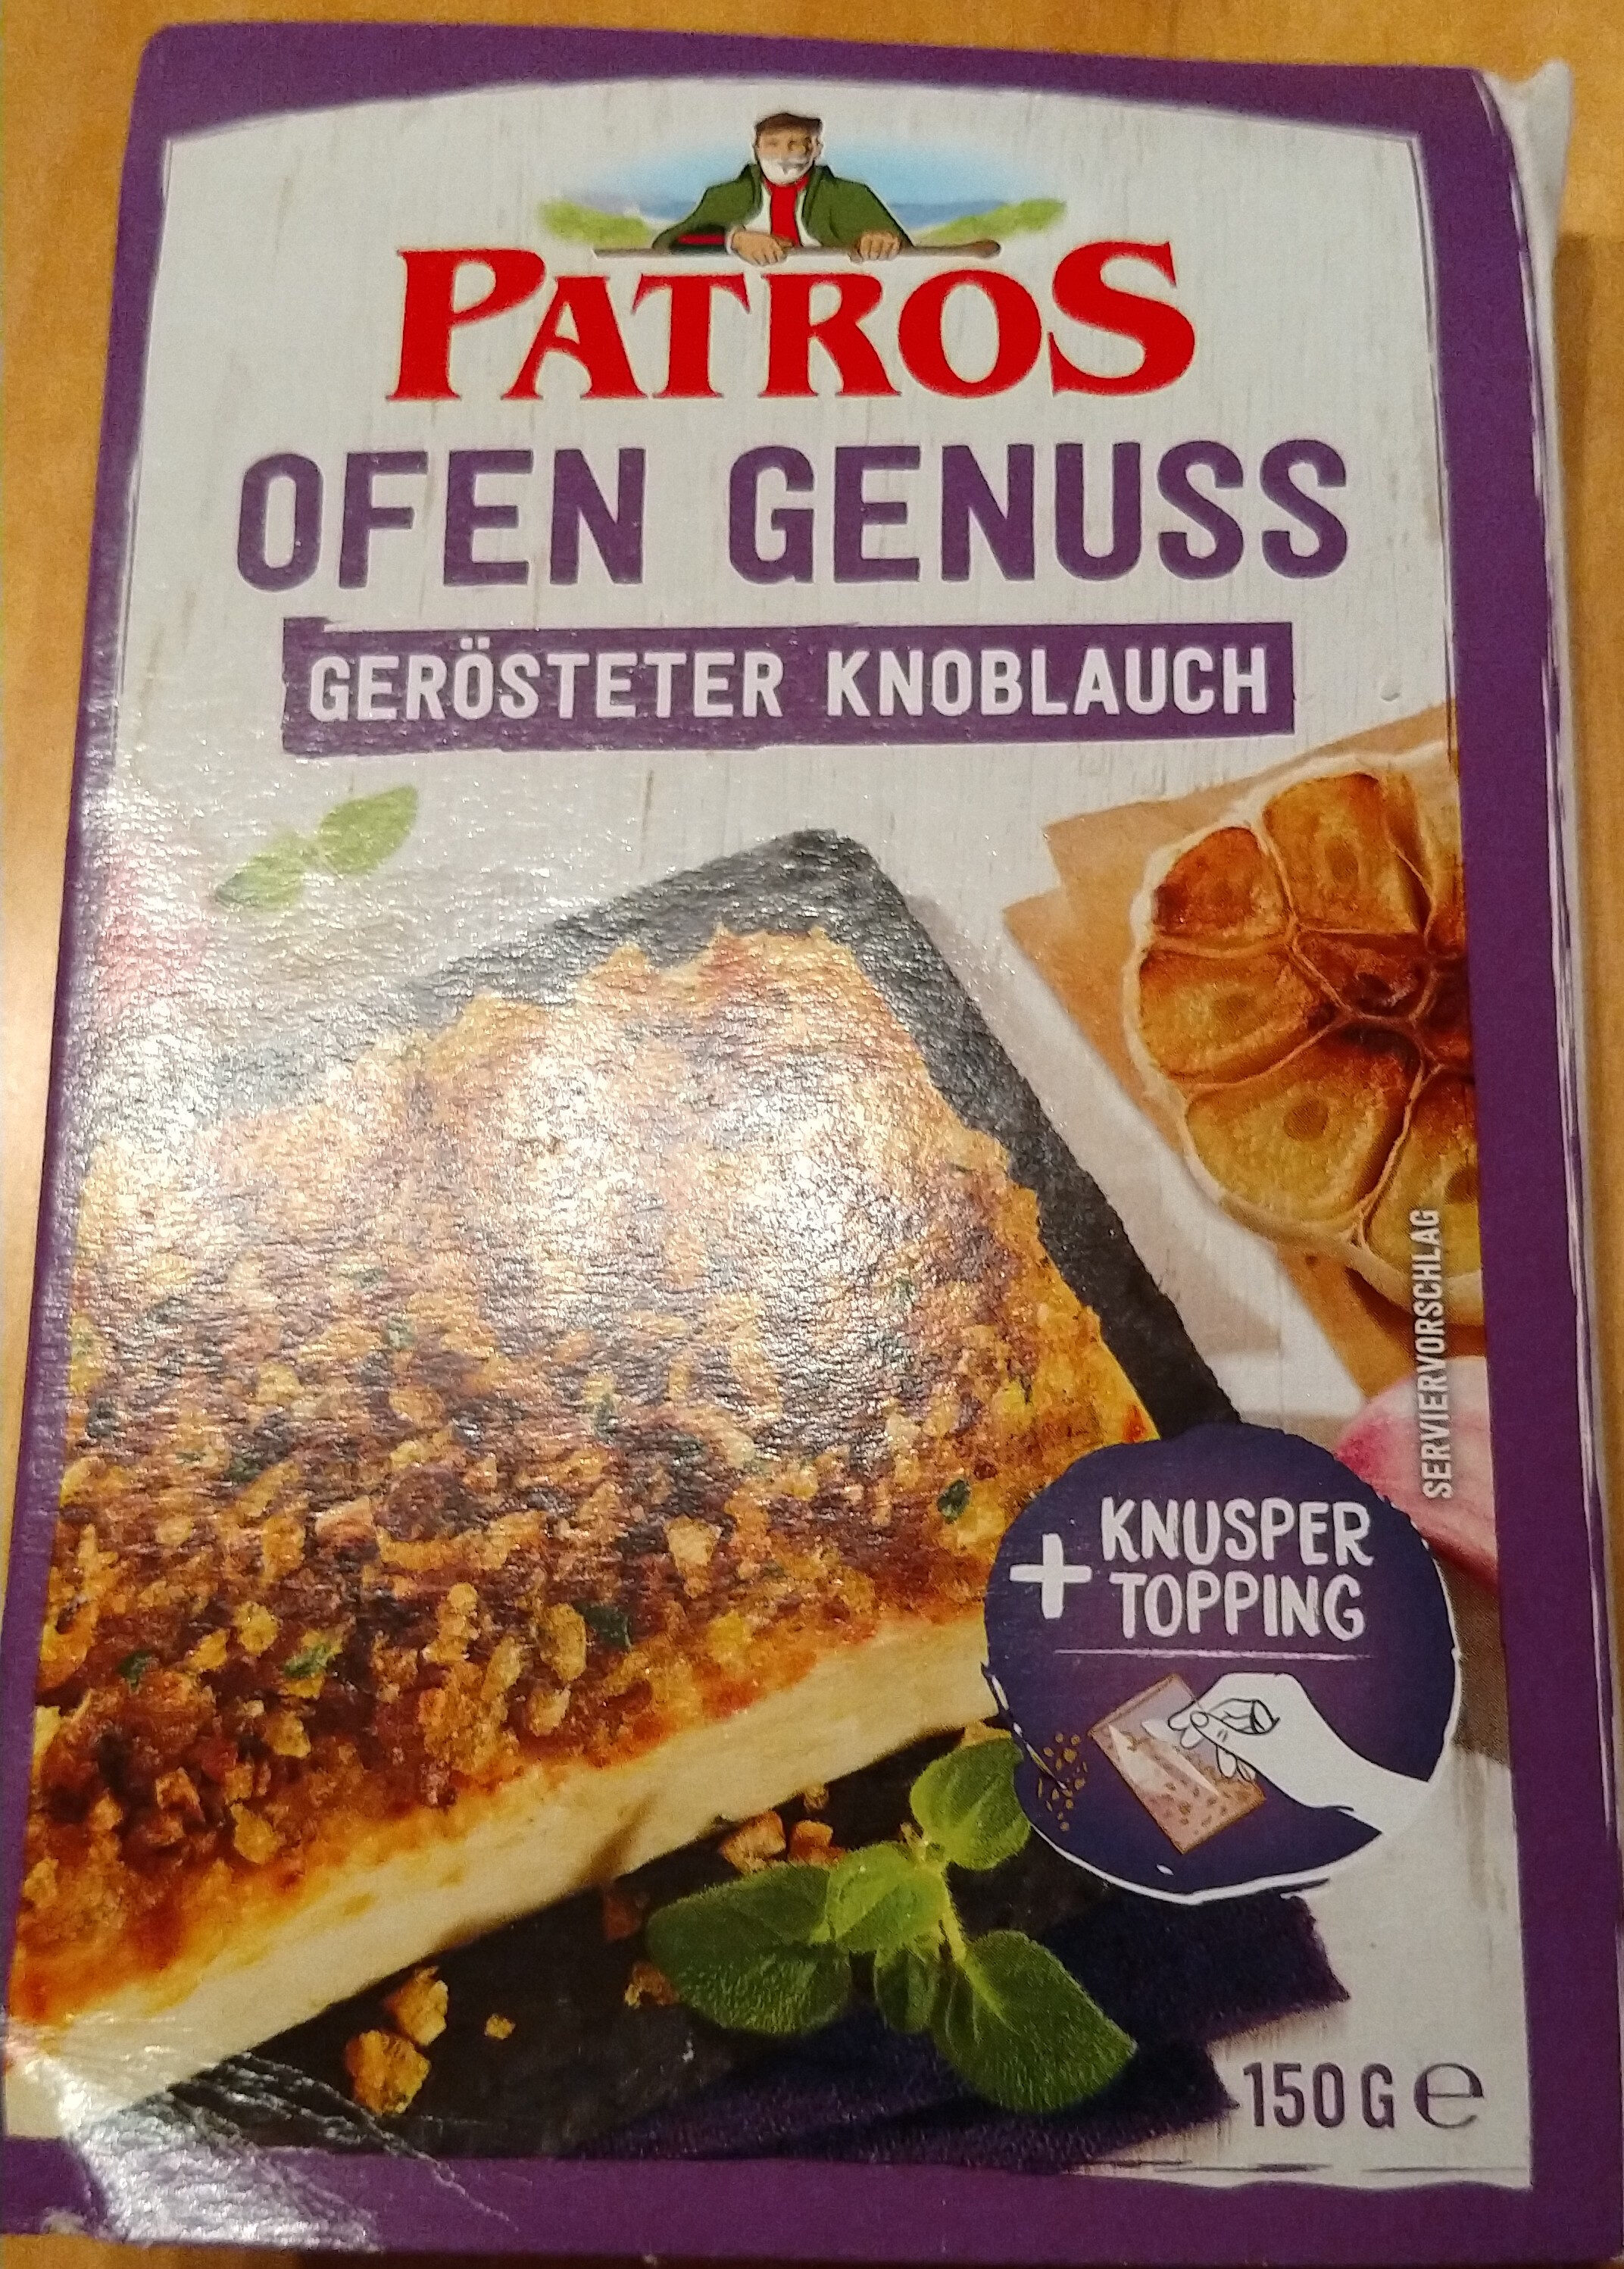 Patros Ofen Genuss Gerösteter Knoblauch - Produkt